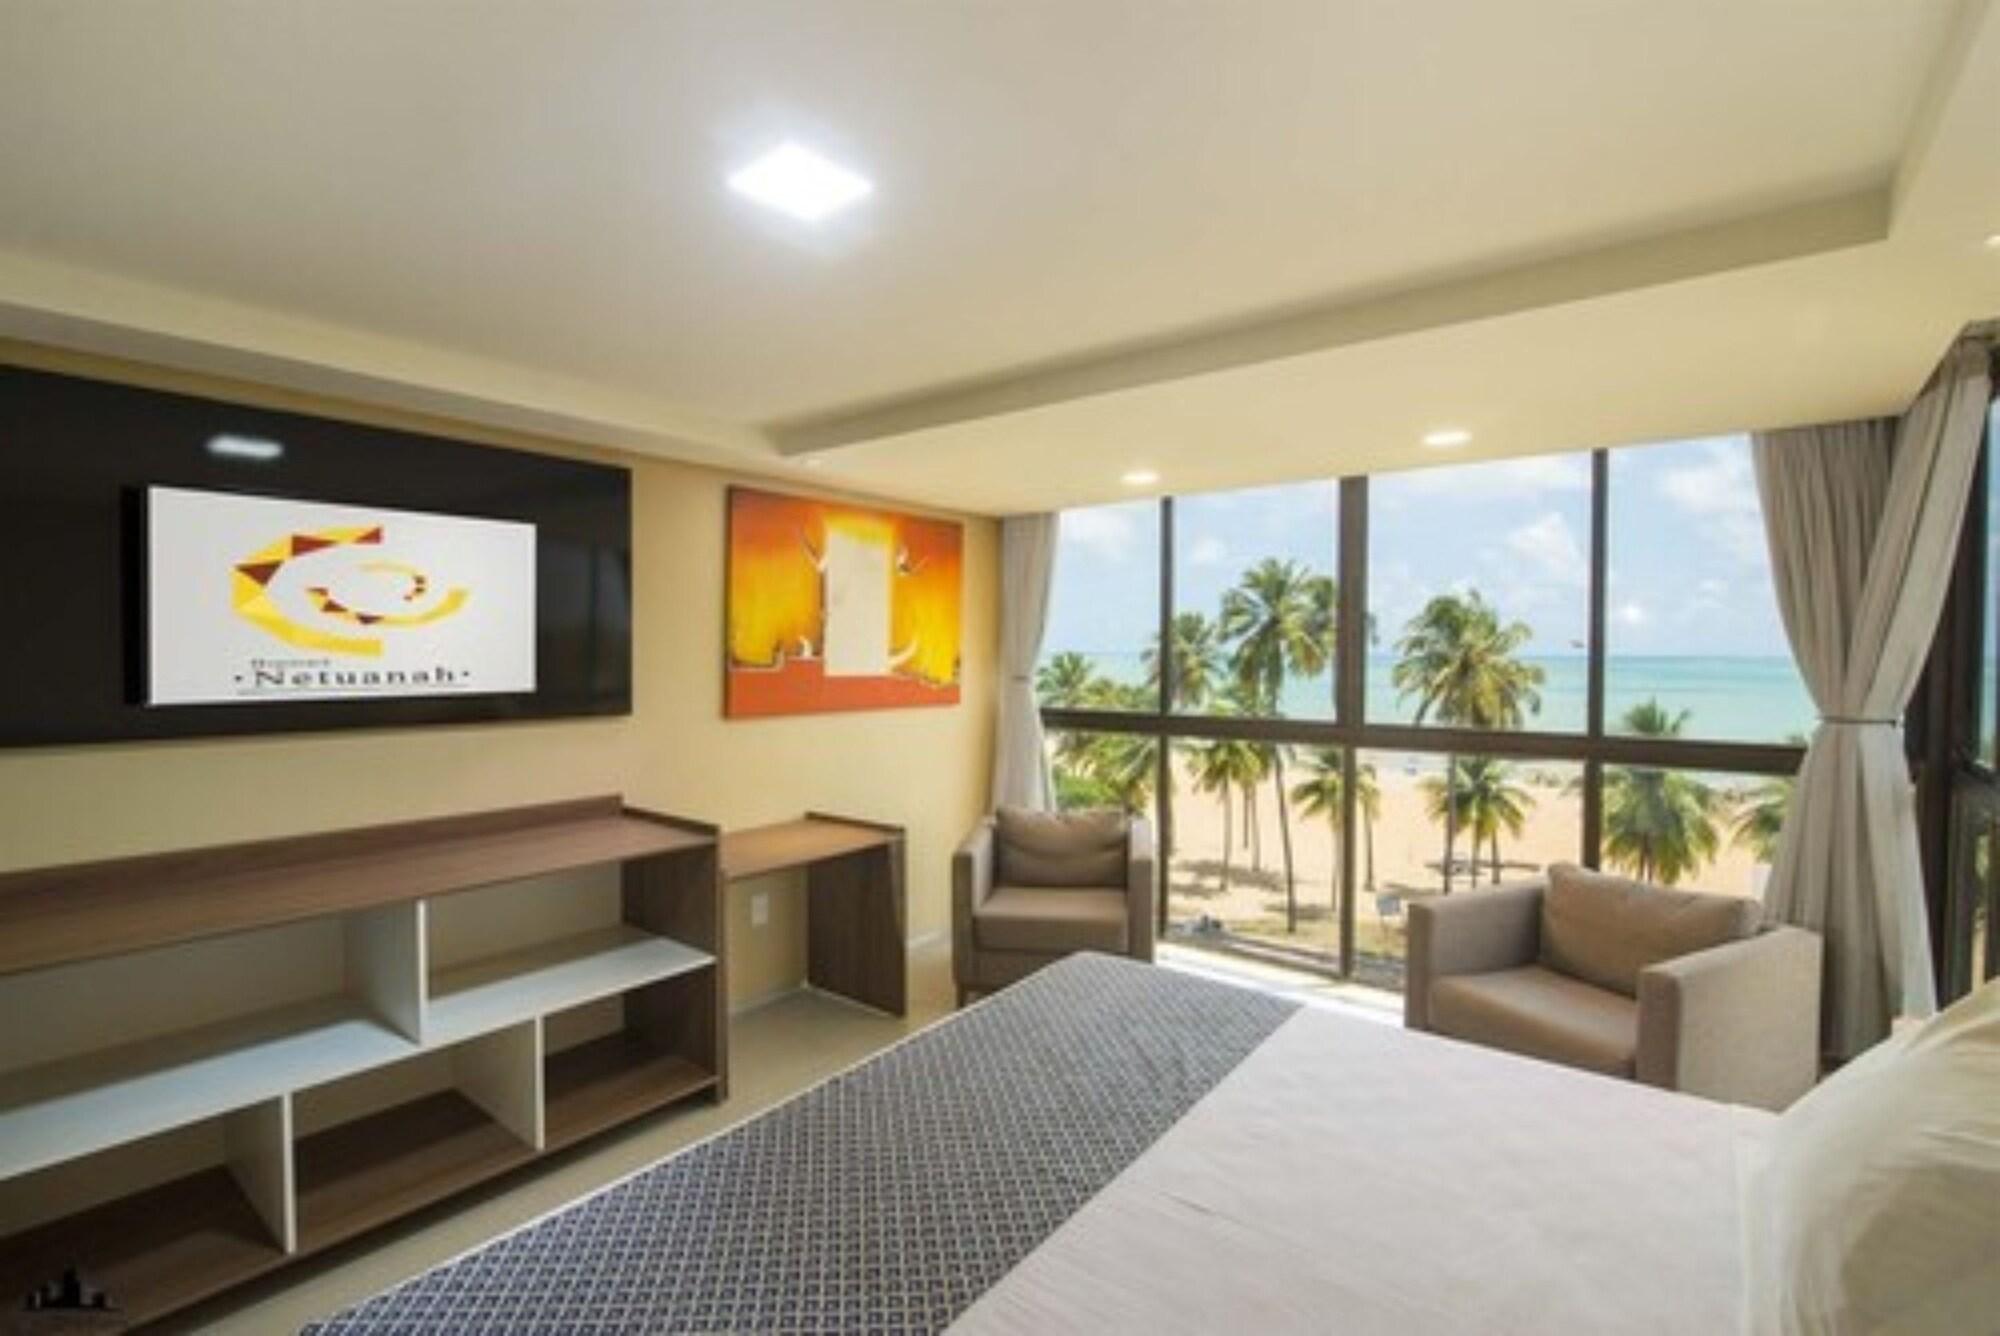 Comodidades do quarto Netuanah Praia Hotel